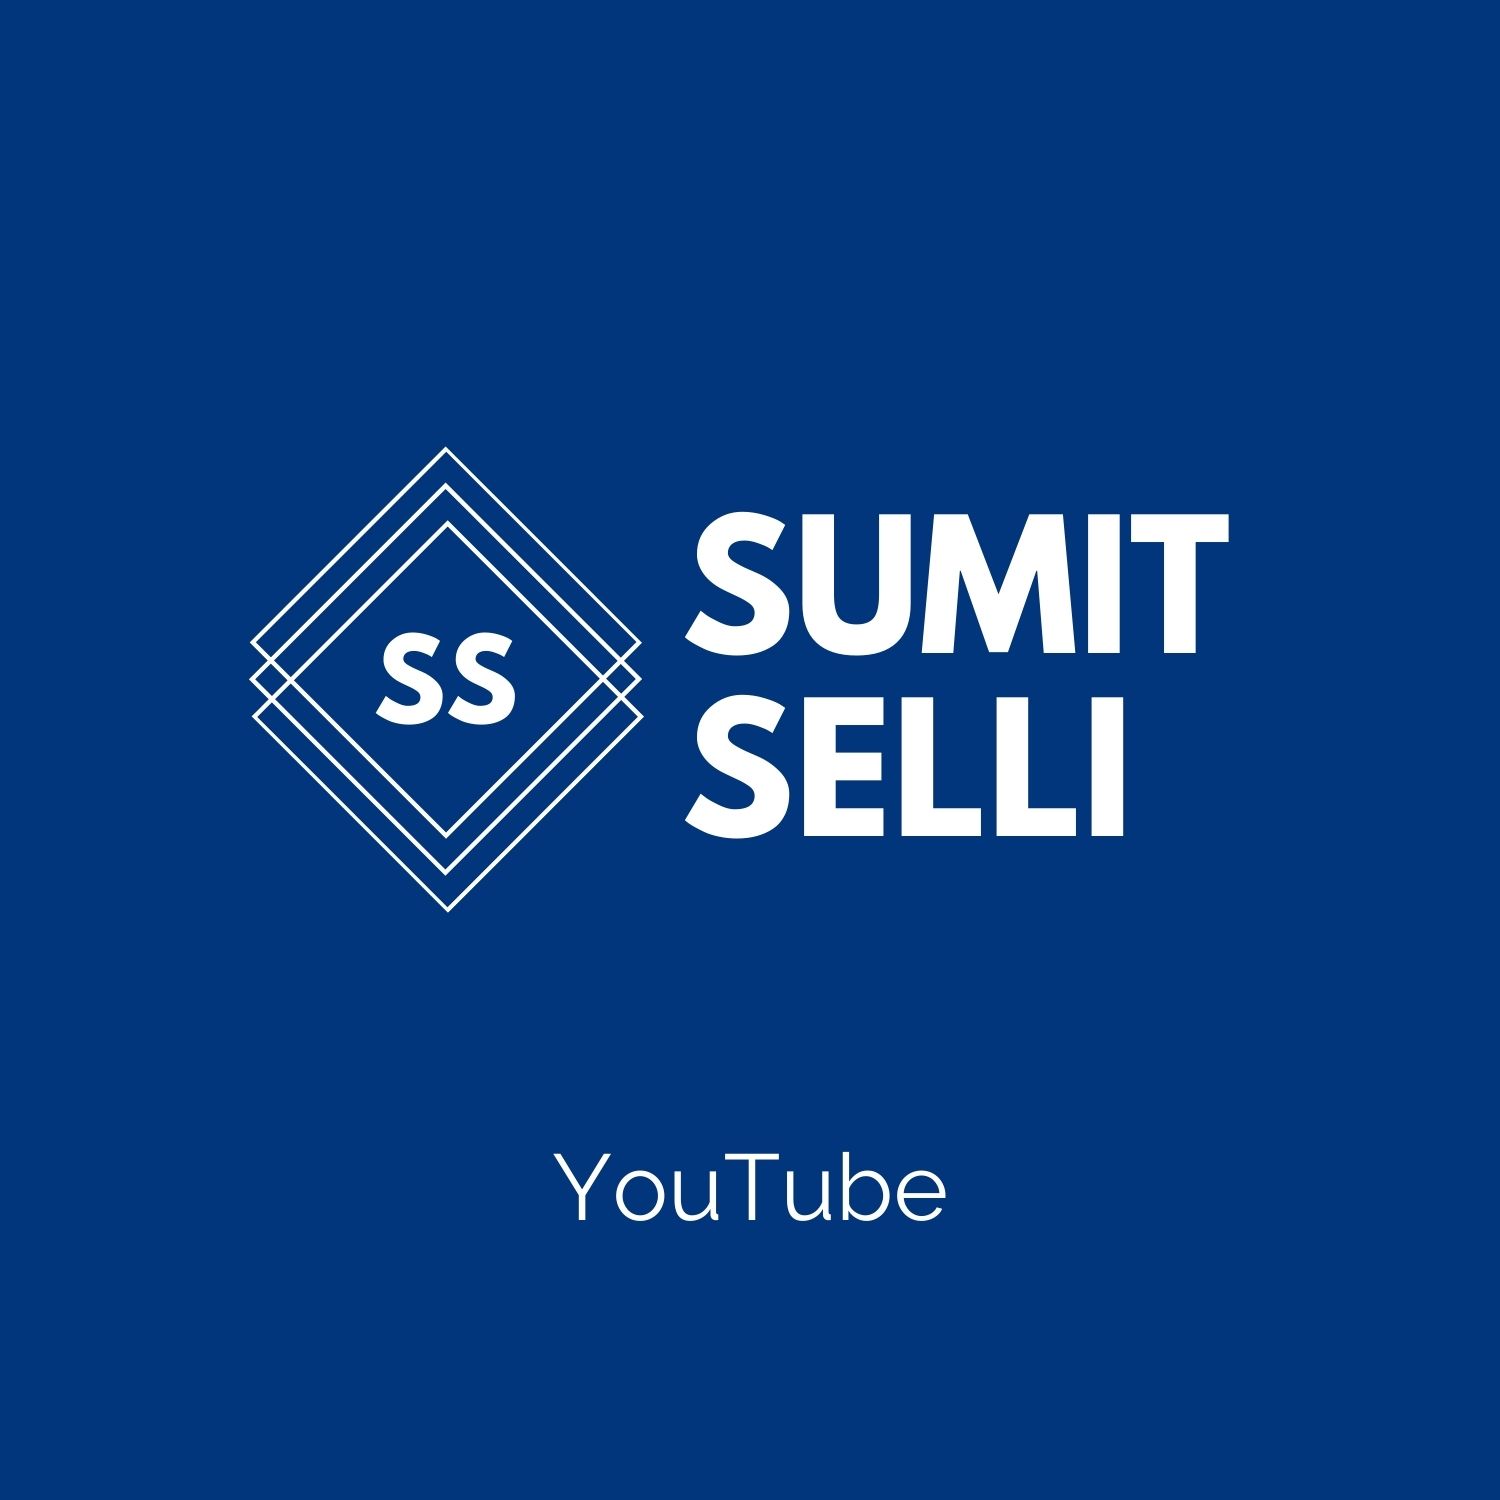 Sumit Selli Logo (3)